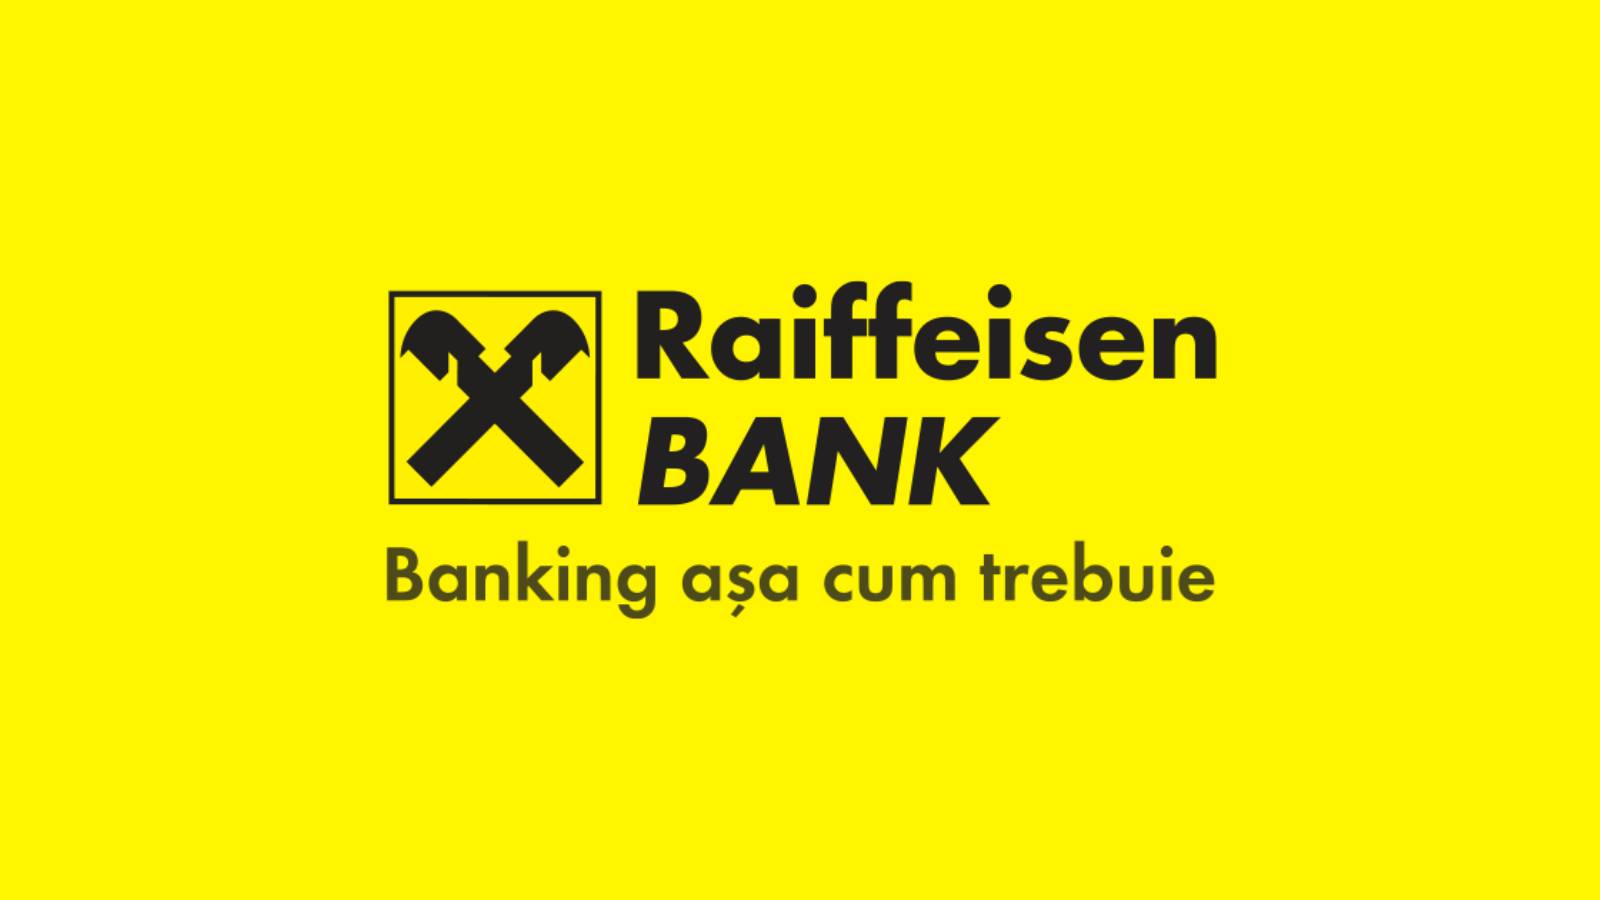 Raiffeisen Bank AMENINTAREA